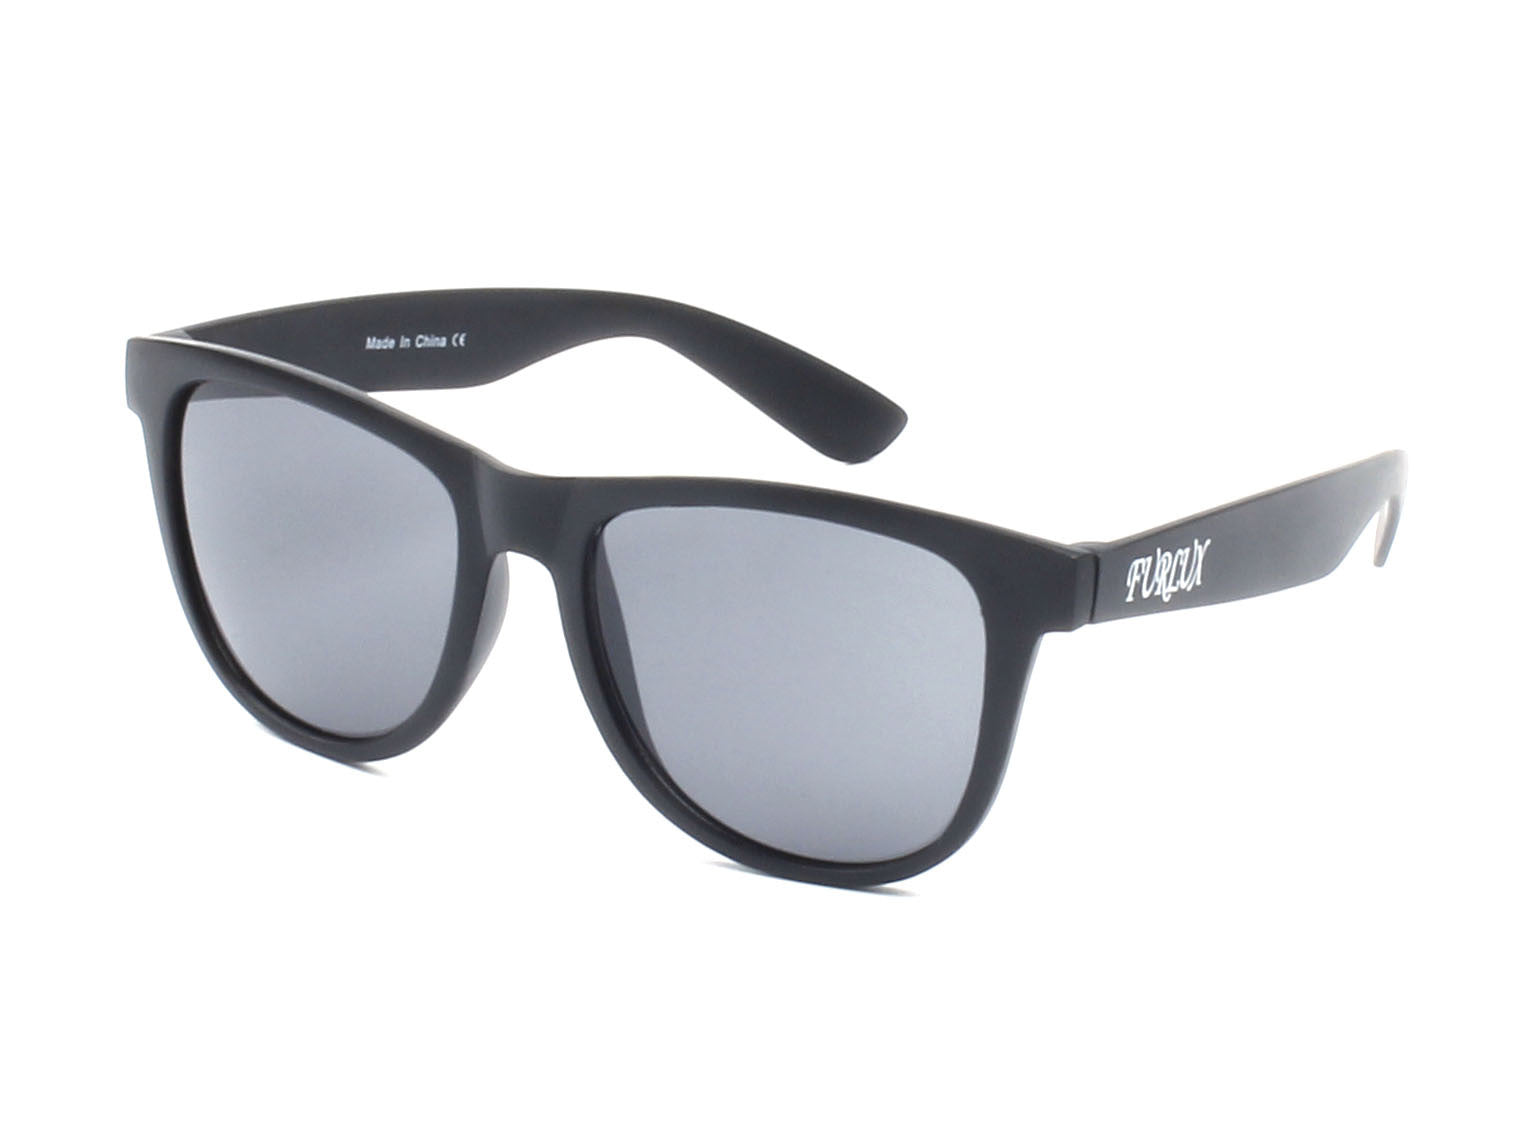 E14 - Jaunty PILLOW Frame Horn Rimmed Sunglasses Black - Black